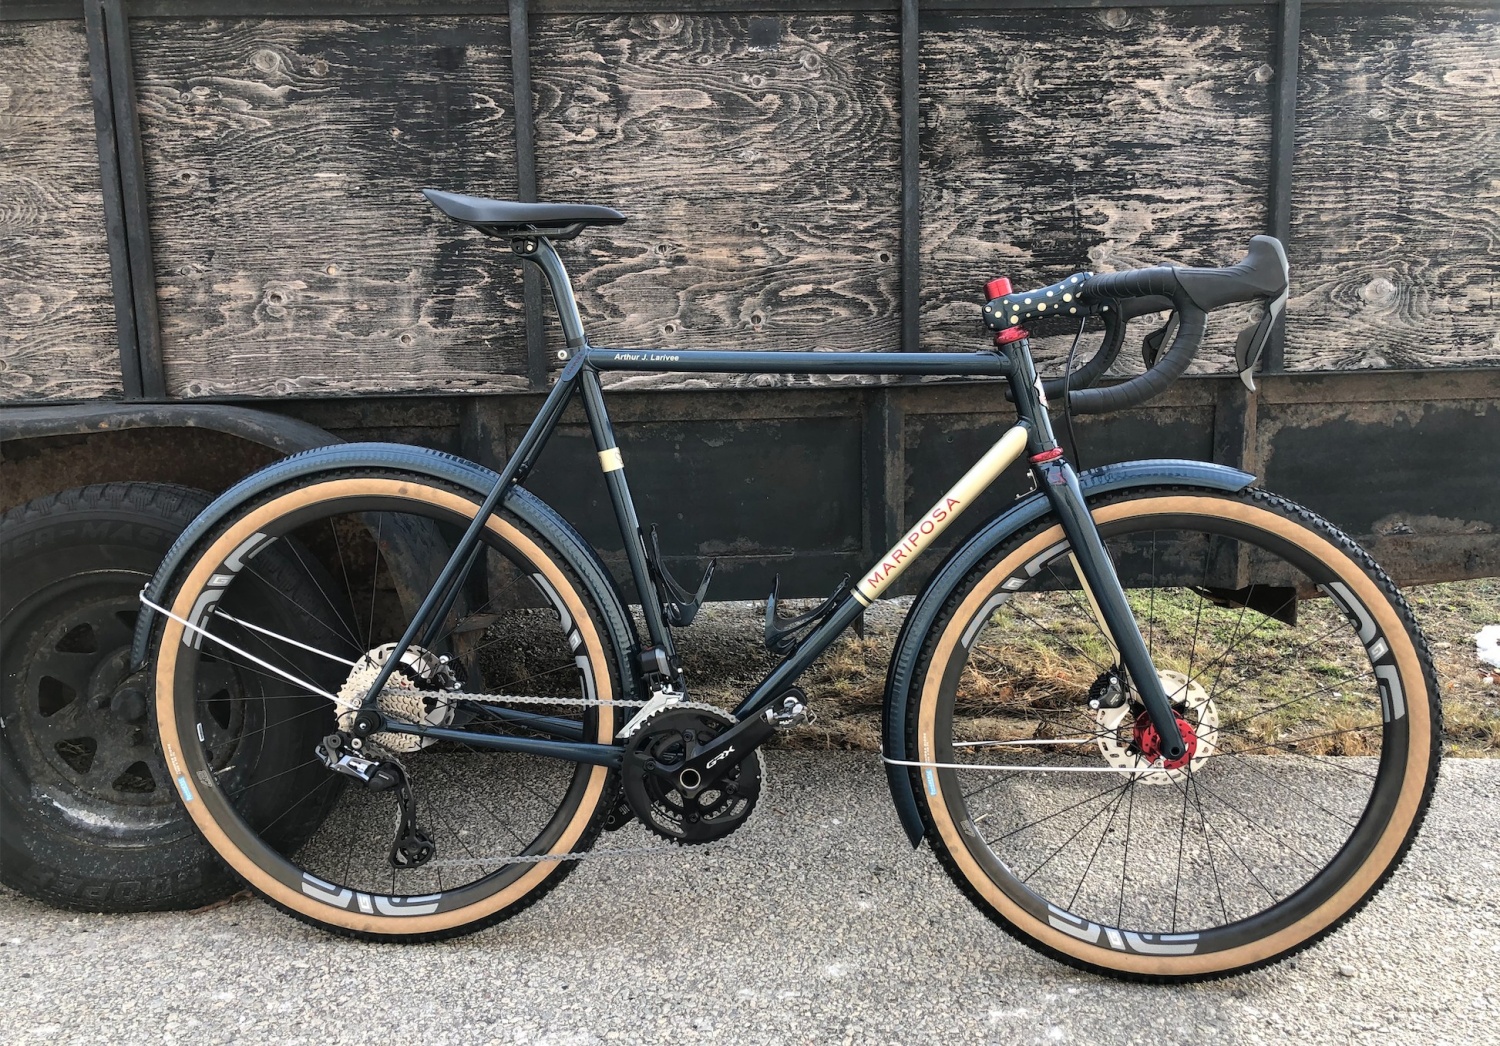 650b bicycle